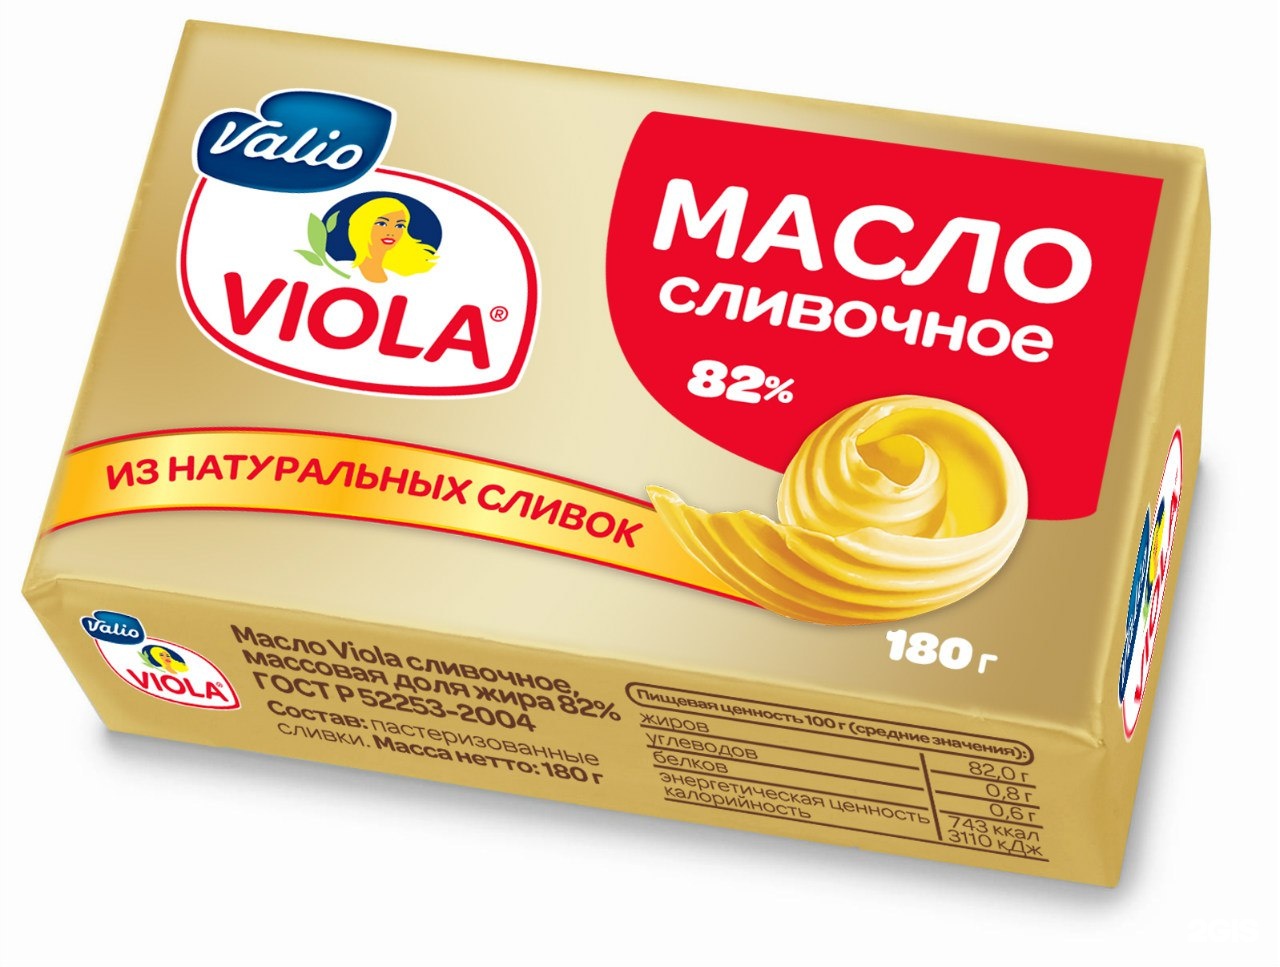 5 6 сливочное масло г. Масло Валио сладкосливочное. Масло Viola сладкосливочное. Viola масло сладкосливочное 82%, 180 г. Масло сливочное Виола 82,5% 180гр.